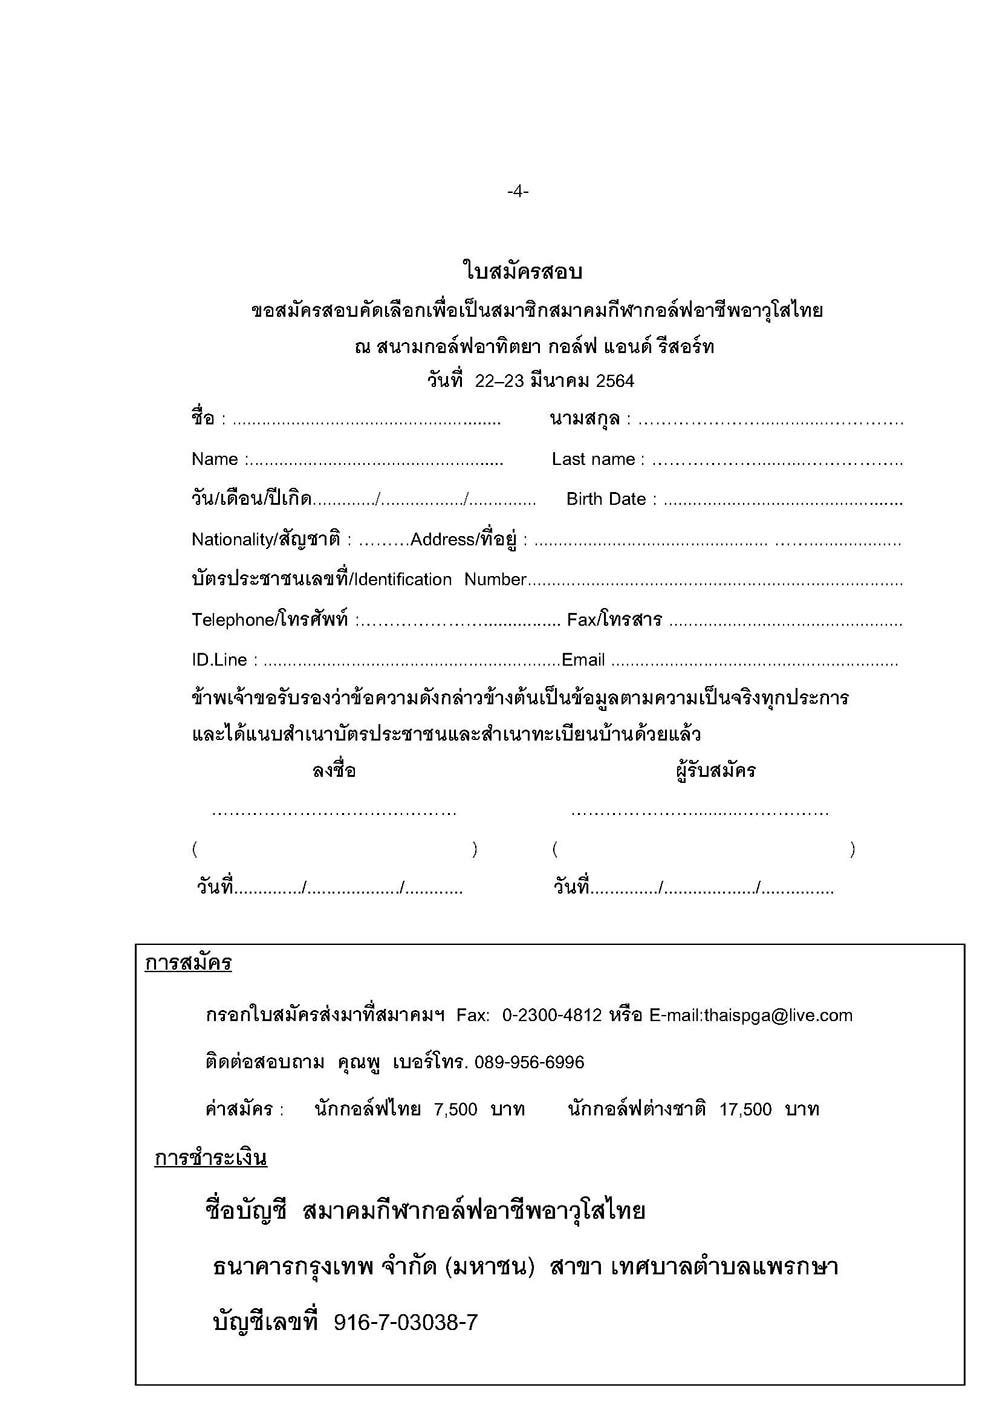 หนงสอสอบเปนภาษาไทย อาทตยา Page 4